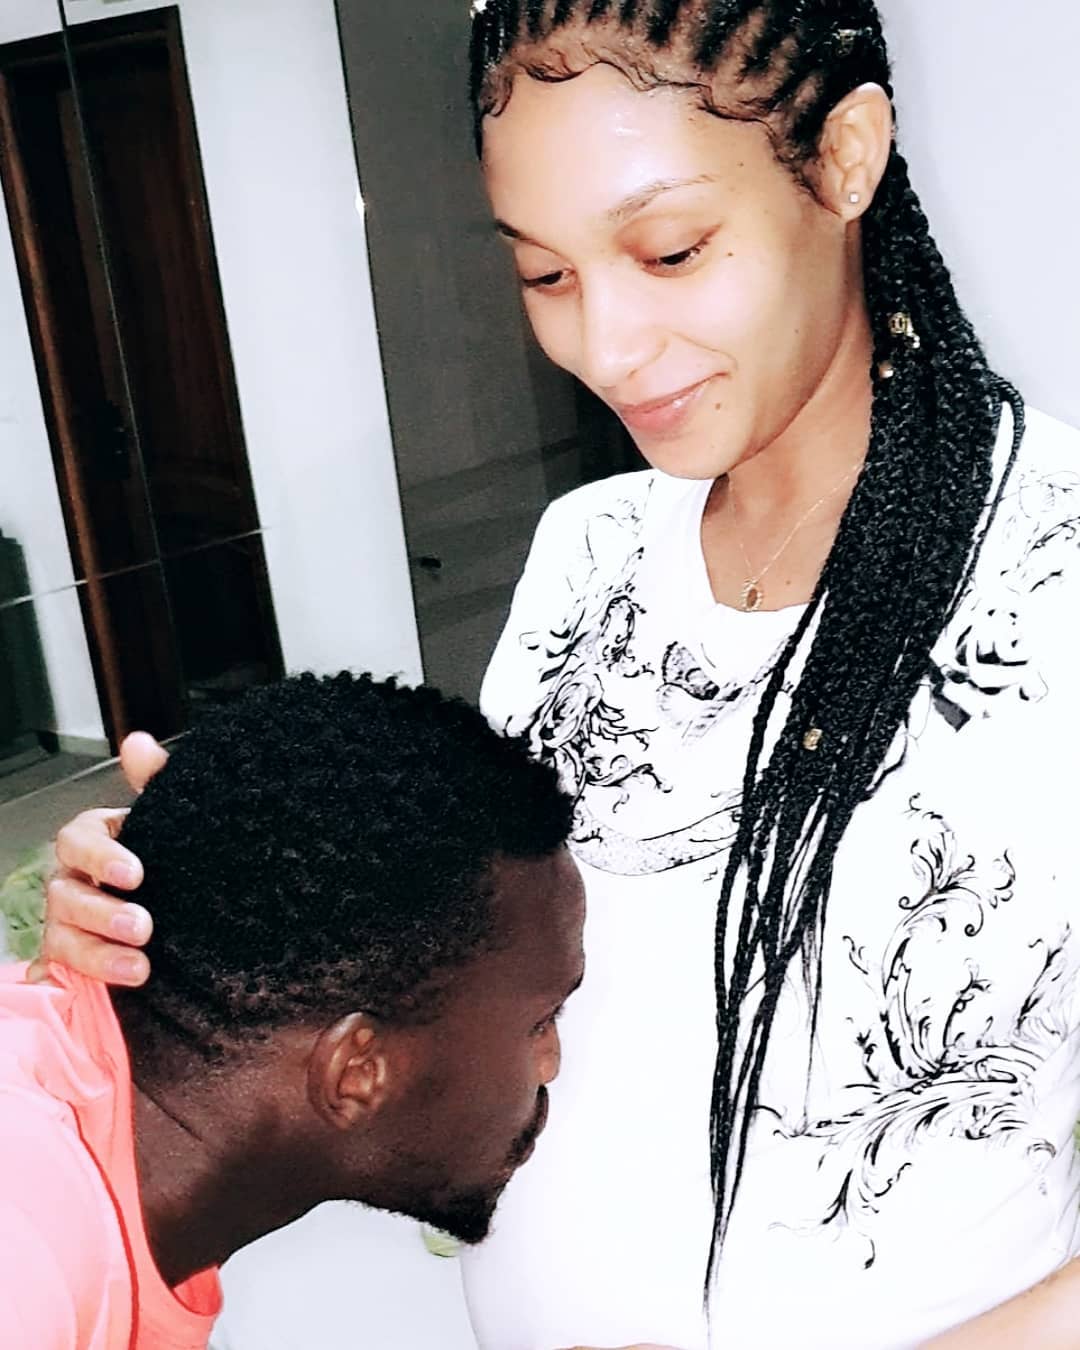 PHOTOS - Ibou Touré embrasse le ventre de son épouse Adja Diallo, enceinte de leur deuxième enfant